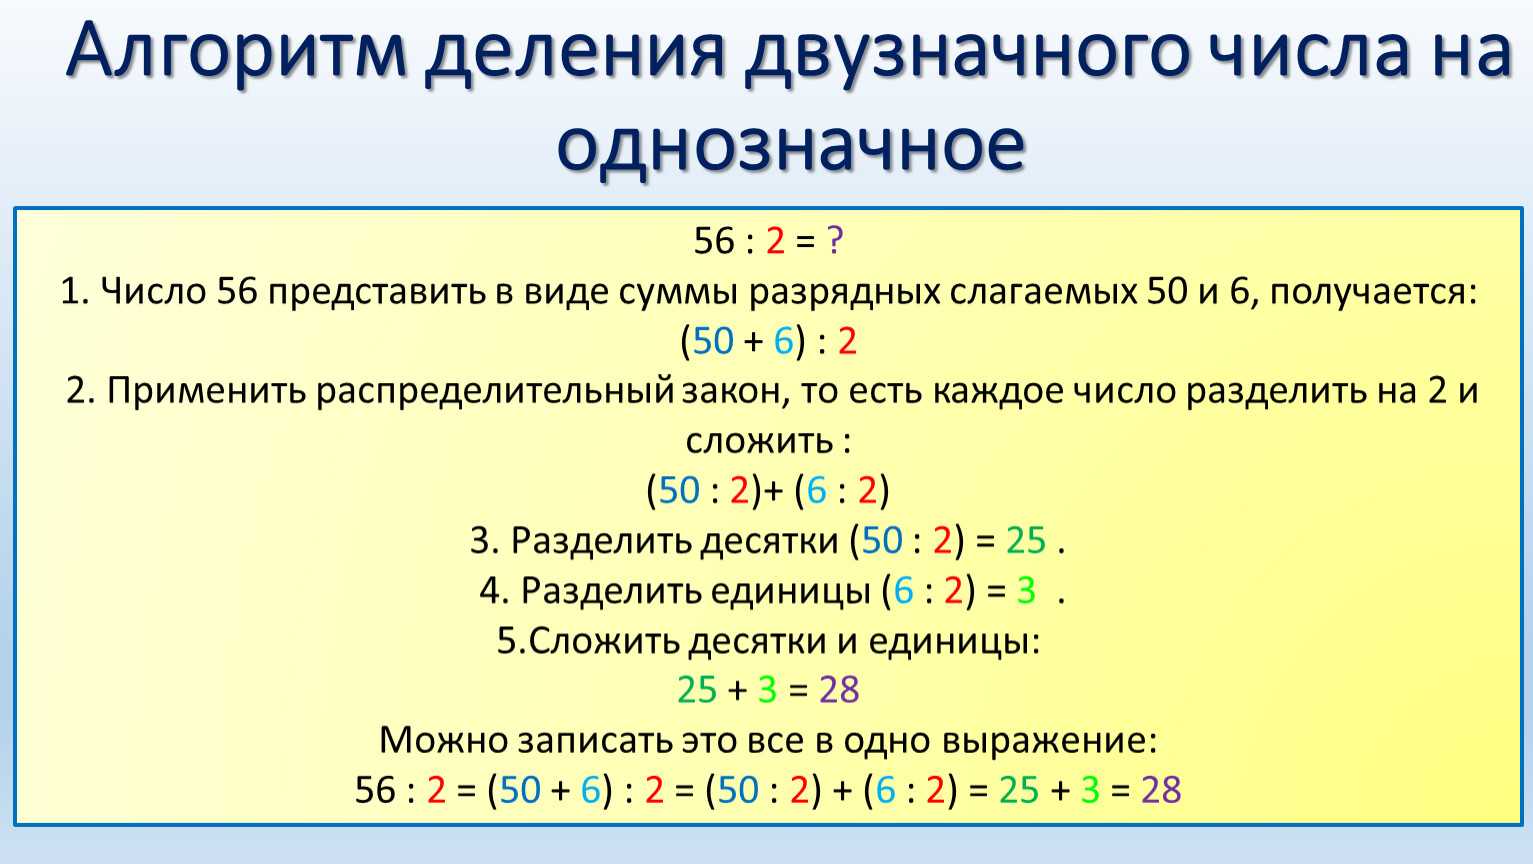 Как научиться делению столбиком, 3 класс,4 класс. деление столбиком 3 двухзначных чисел. деление столбиком 4 трёхзначных чисел. пример деления столбиком без остатка, с остатком. делим числа столбиком